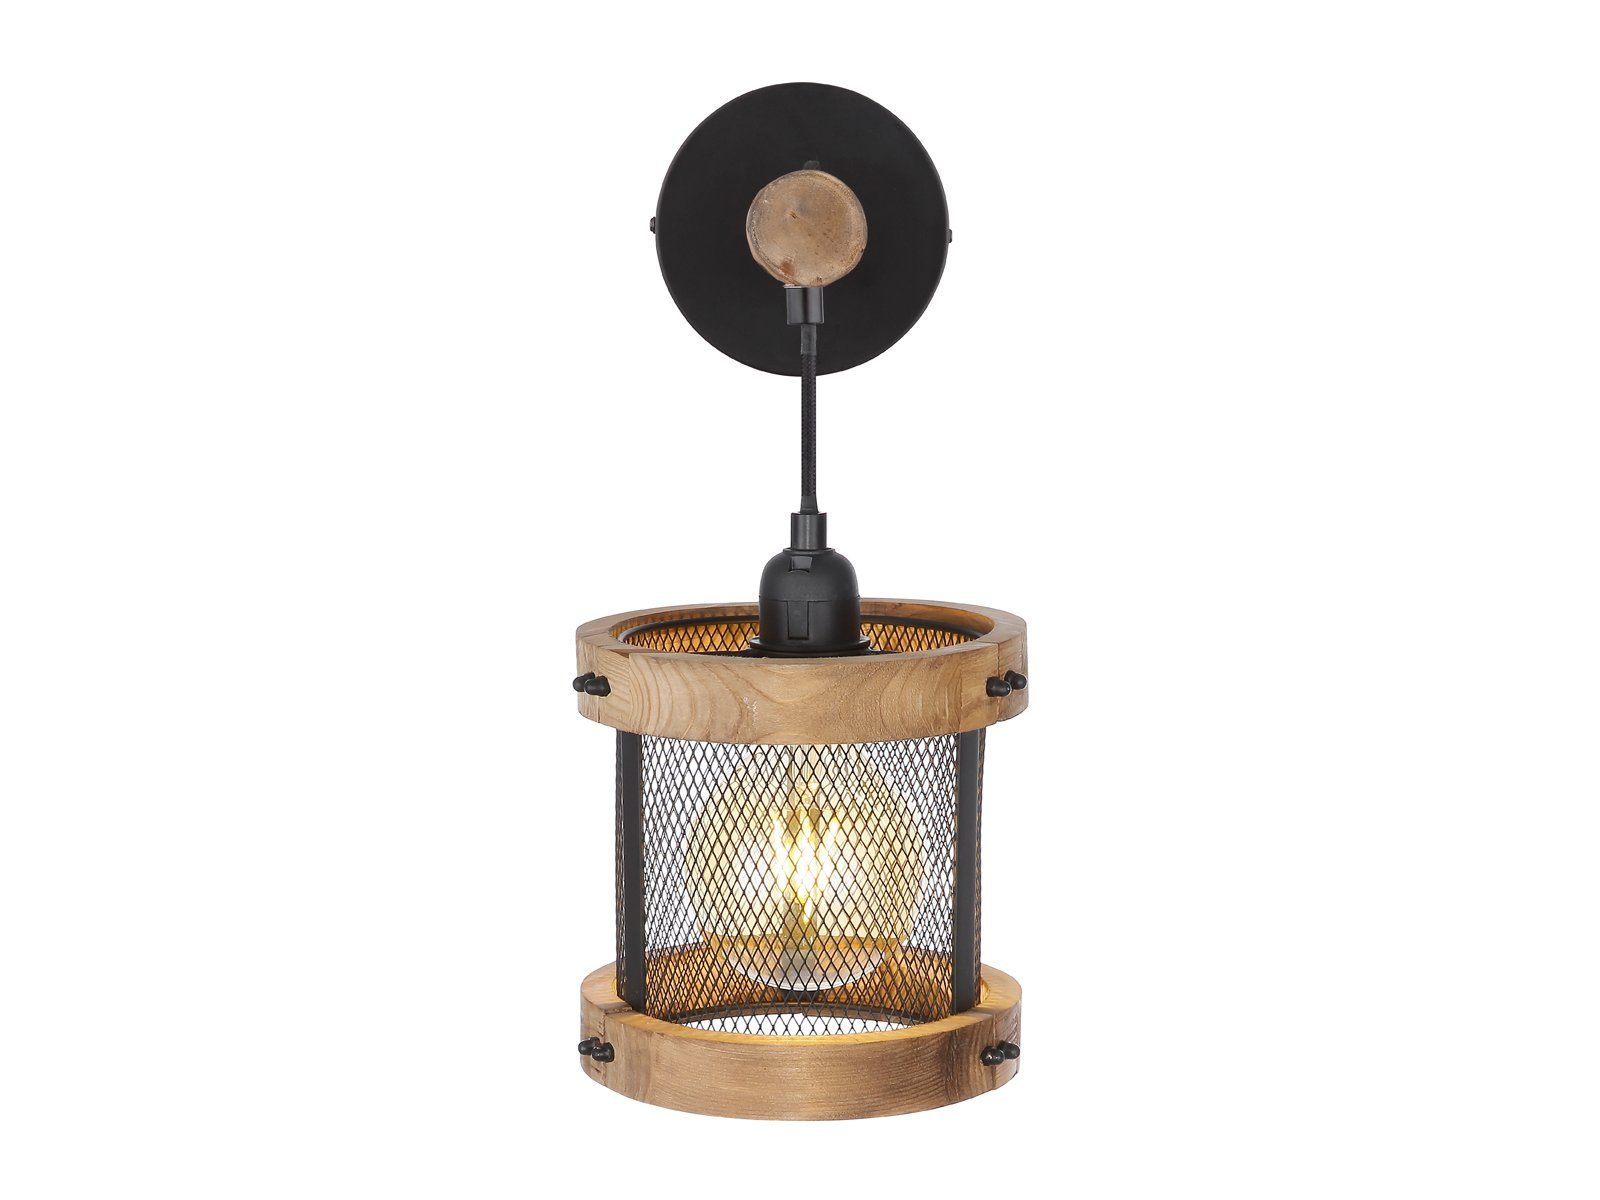 LED innen, hängend meineWunschleuchte LED für Holz-lampe wechselbar, Wandleuchte, warmweiß, Treppenhaus, Industriedesign Ø16cm